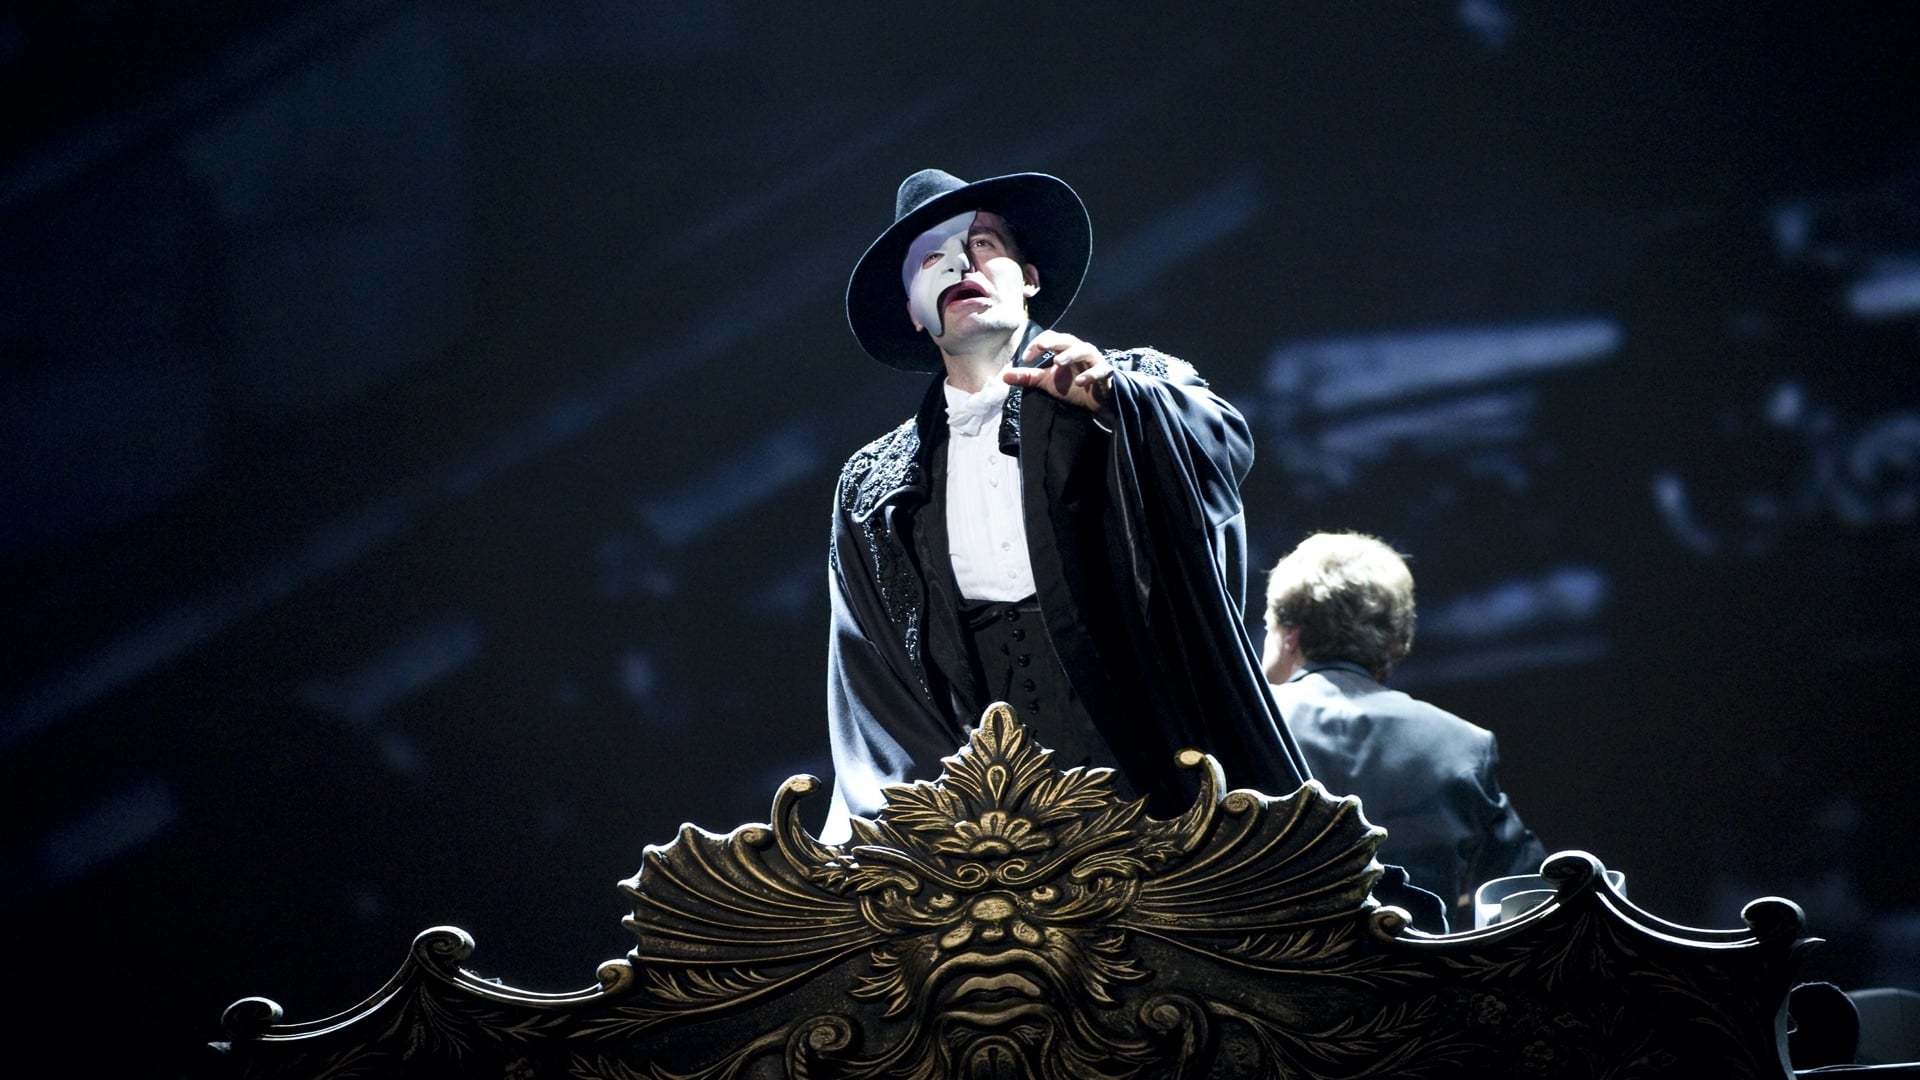 El fantasma de la ópera en el Royal Albert Hall (2011)